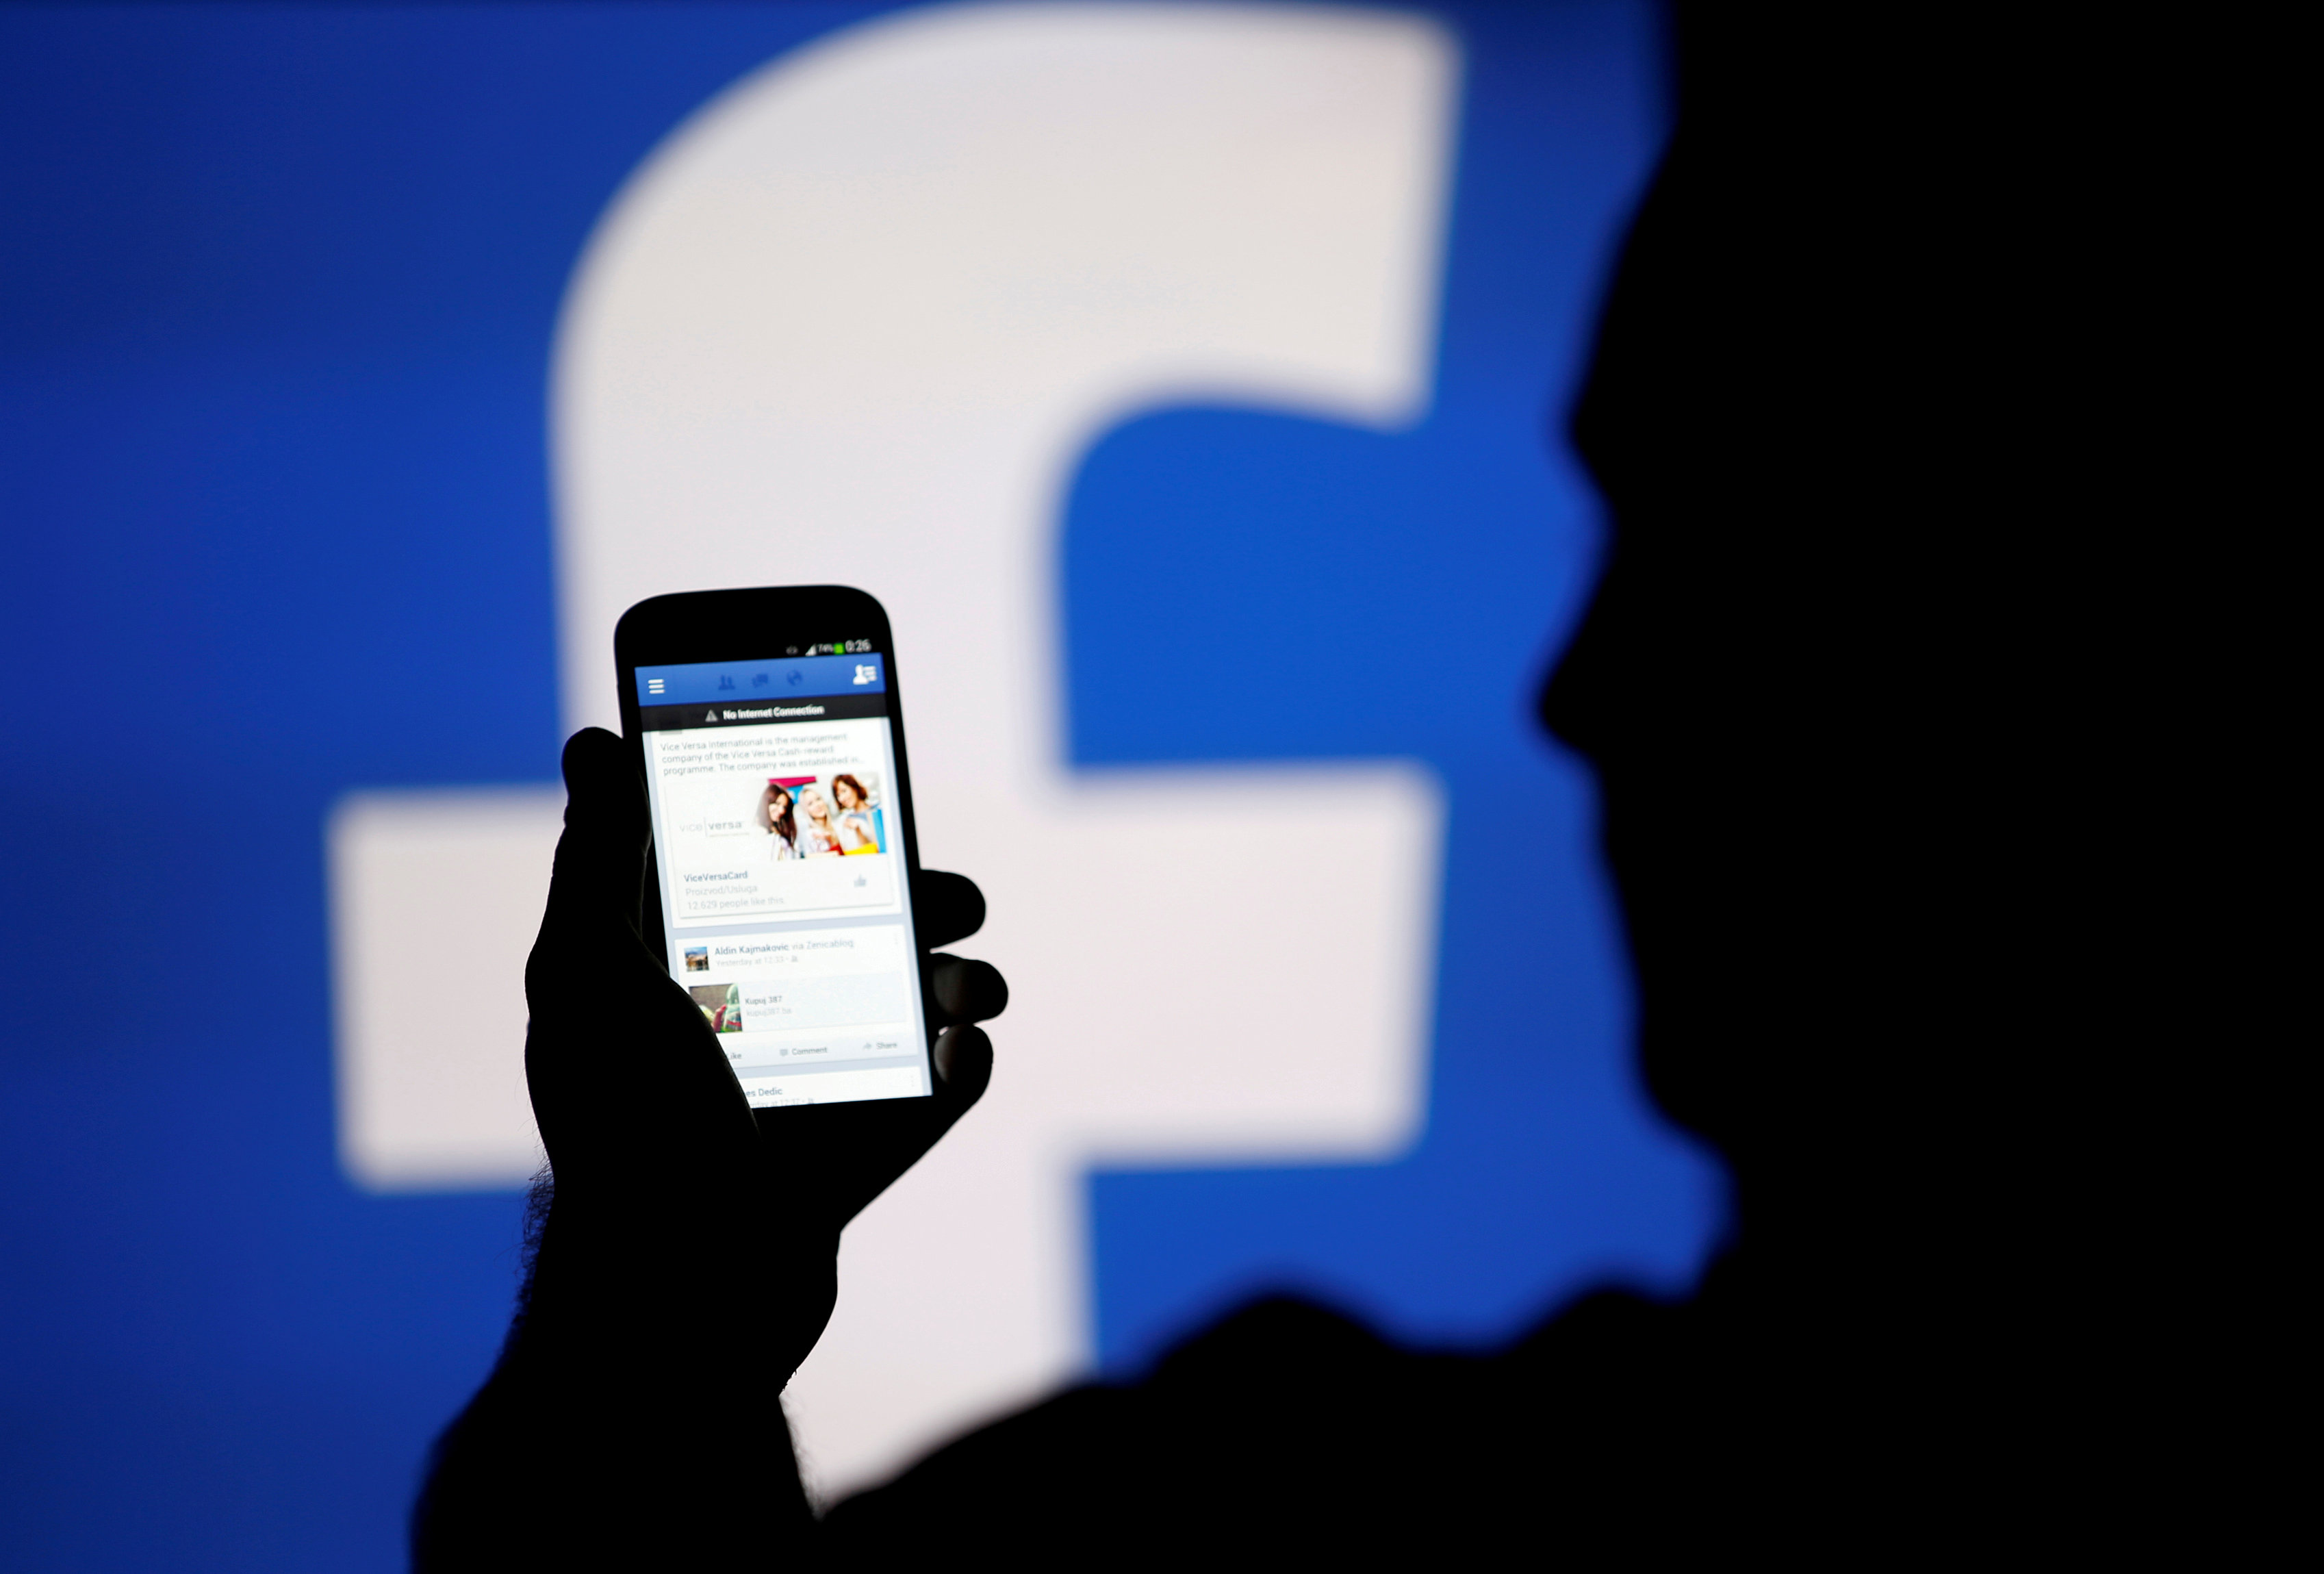 Το Facebook στοχεύει να αποτελέσει «εχθρικό περιβάλλον» για τρομοκράτες